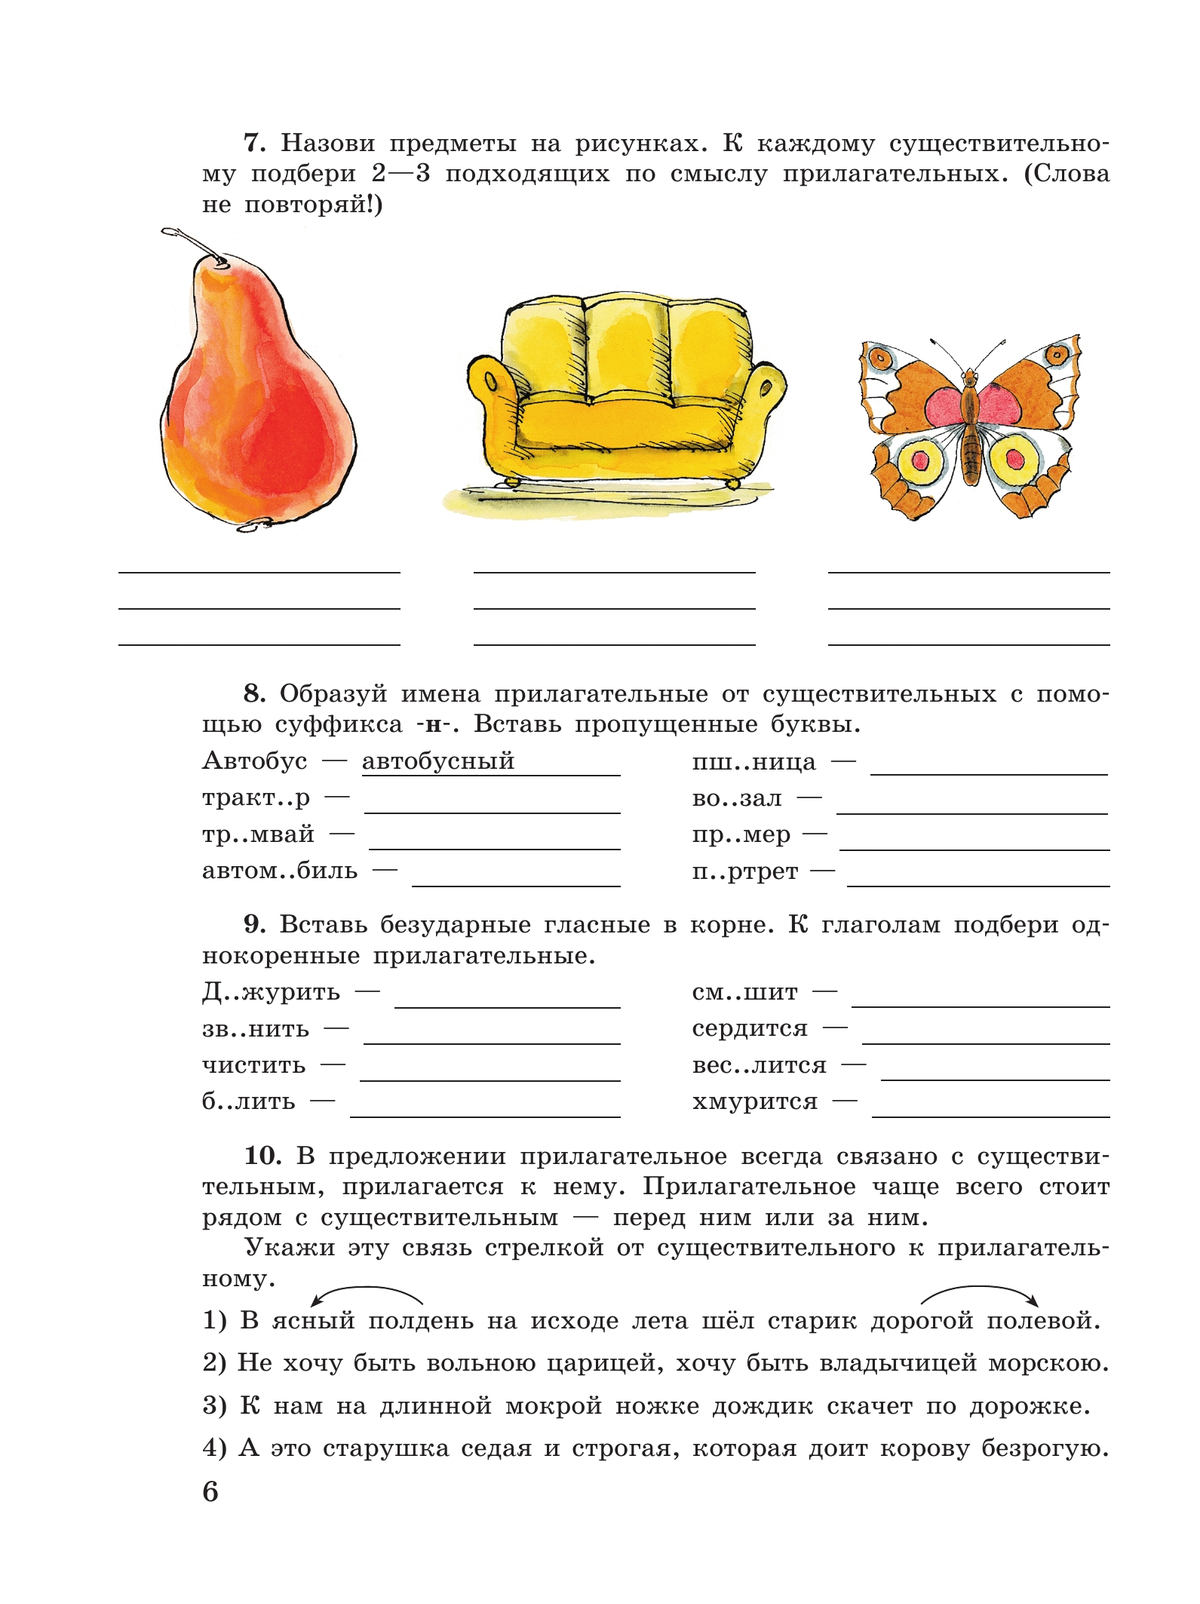 Русский язык. Имя прилагательное. 5-9 классы. Рабочая тетрадь 3 (для обучающихся с интеллектуальными нарушениями) 2